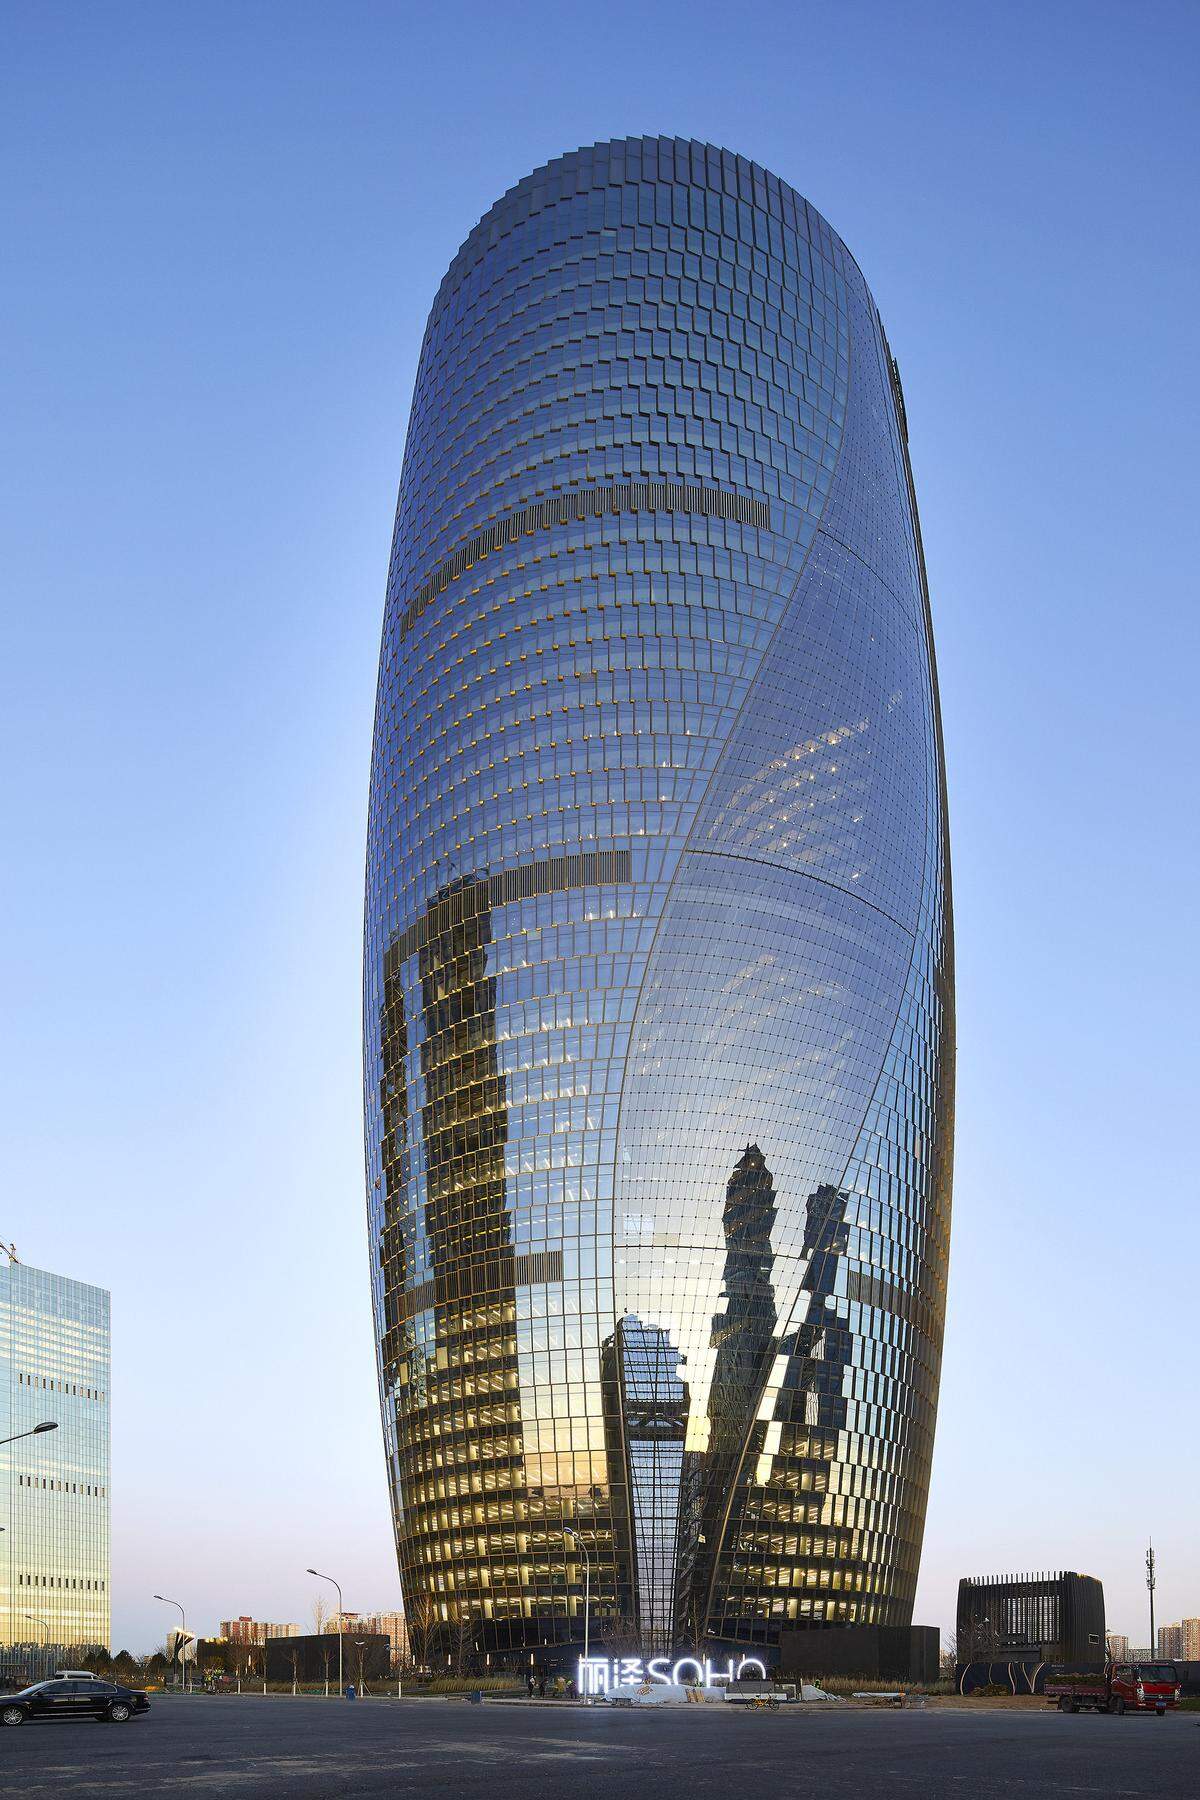 Der zweite Platz geht an das Leeza SOHO in Peking. Das einzigartige Bürogebäude mit seiner runden Form und der in sich verdrehten Struktur war eines der letzten Projekte der Stararchitektin Zaha Hadid vor ihrem Tod im Jahr 2016.